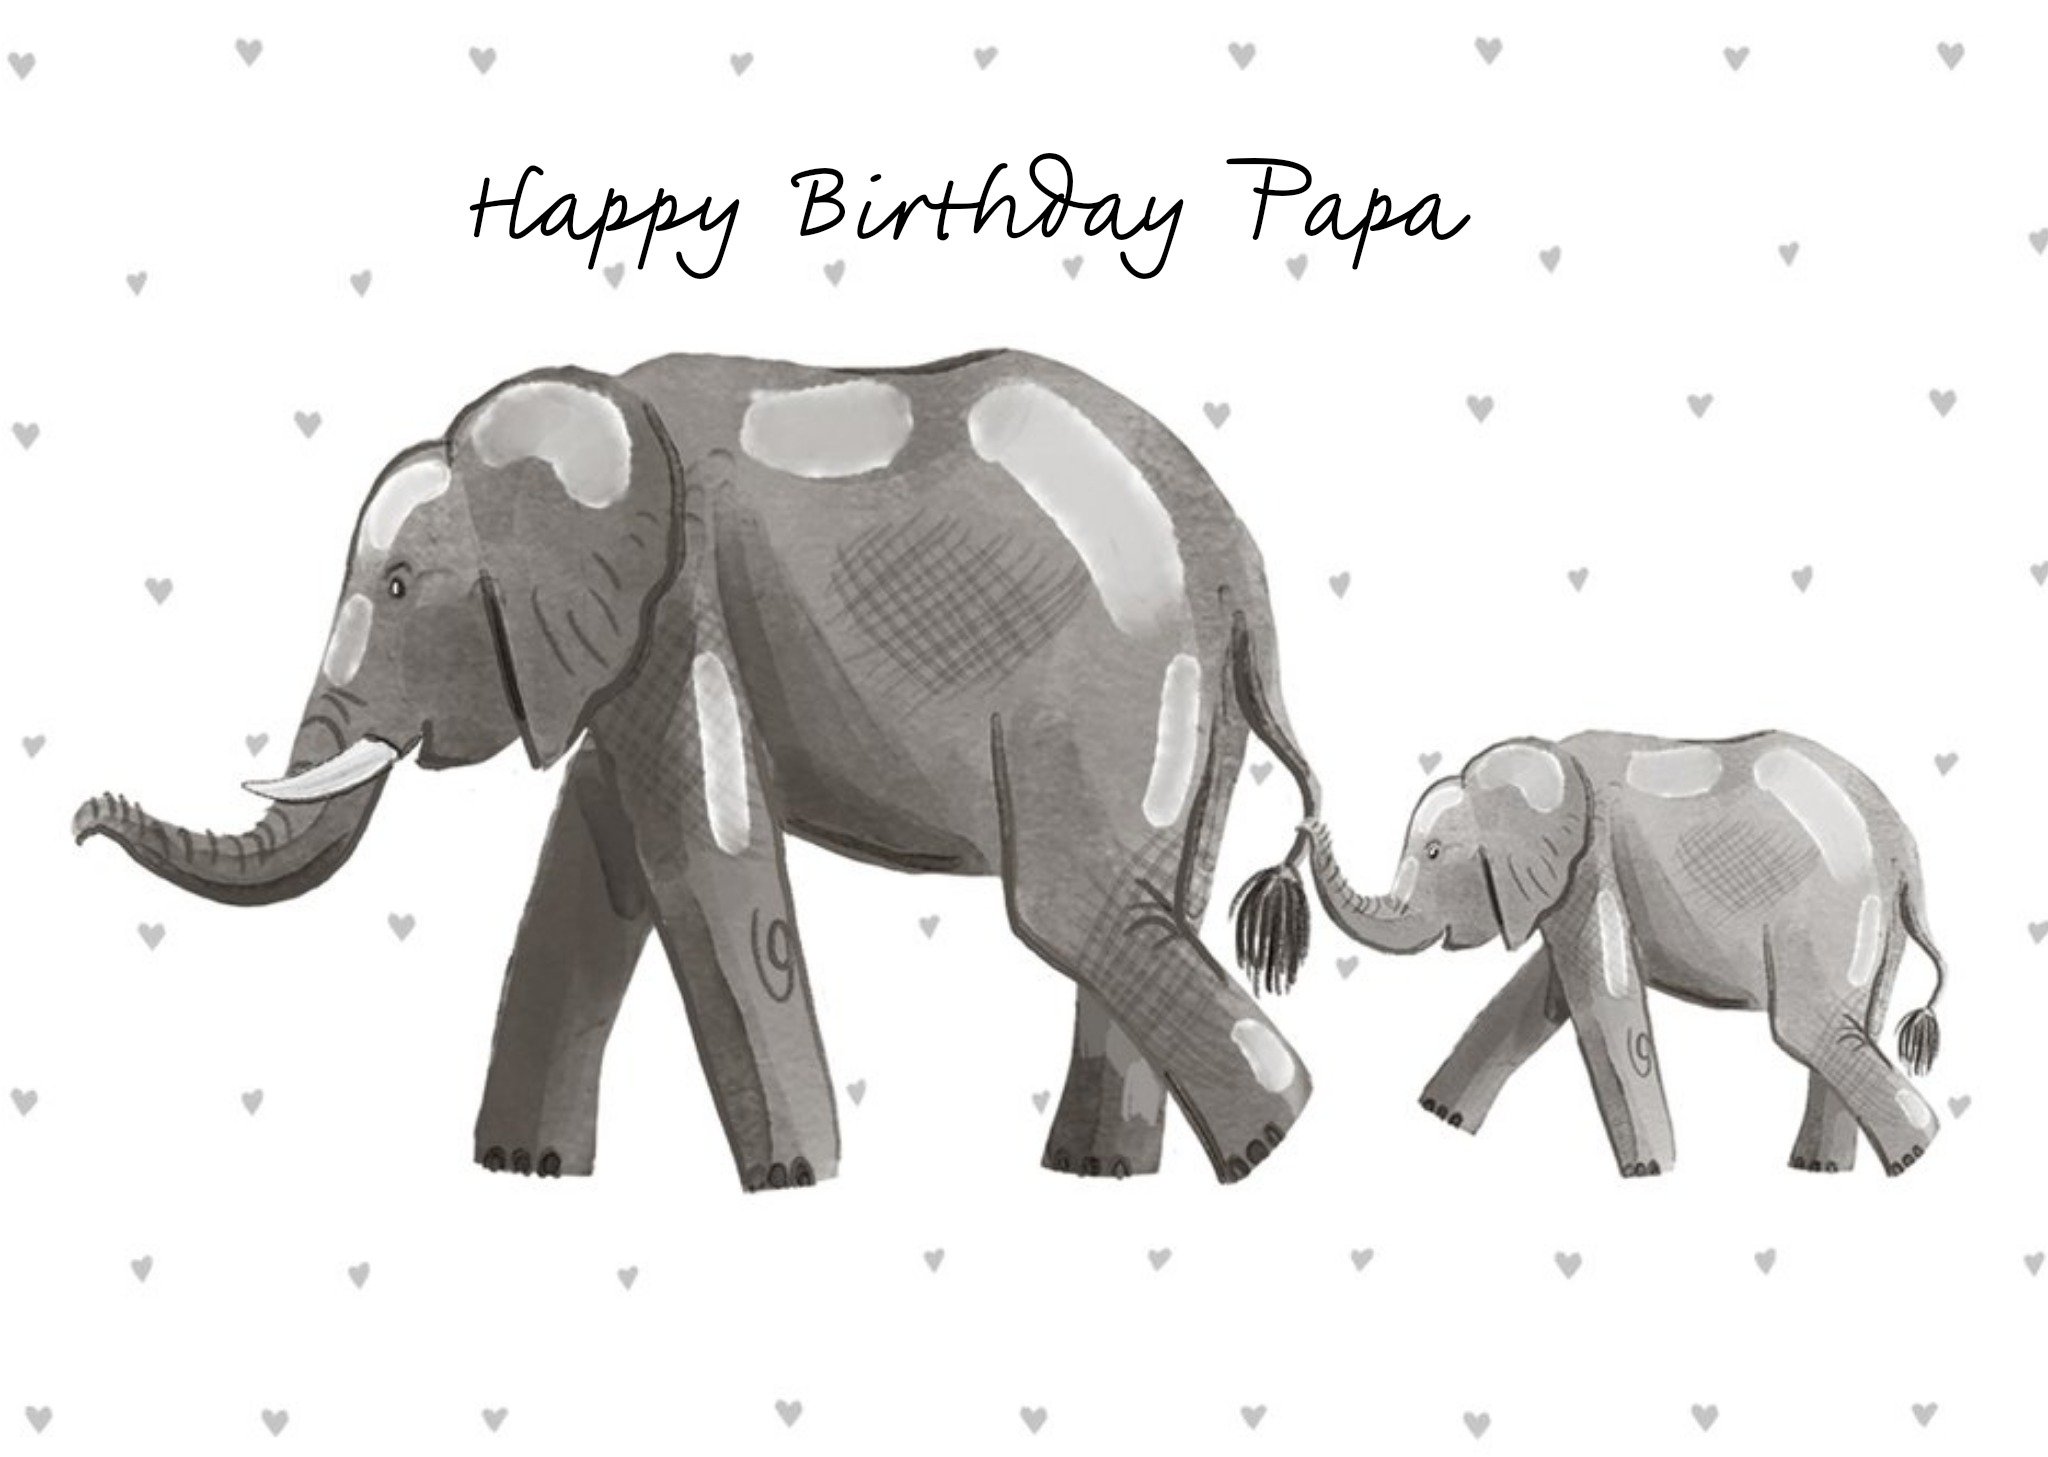 Moonpig Okey Dokey Design Cute Illustrated Father & Son Elephant Birthday Card Ecard